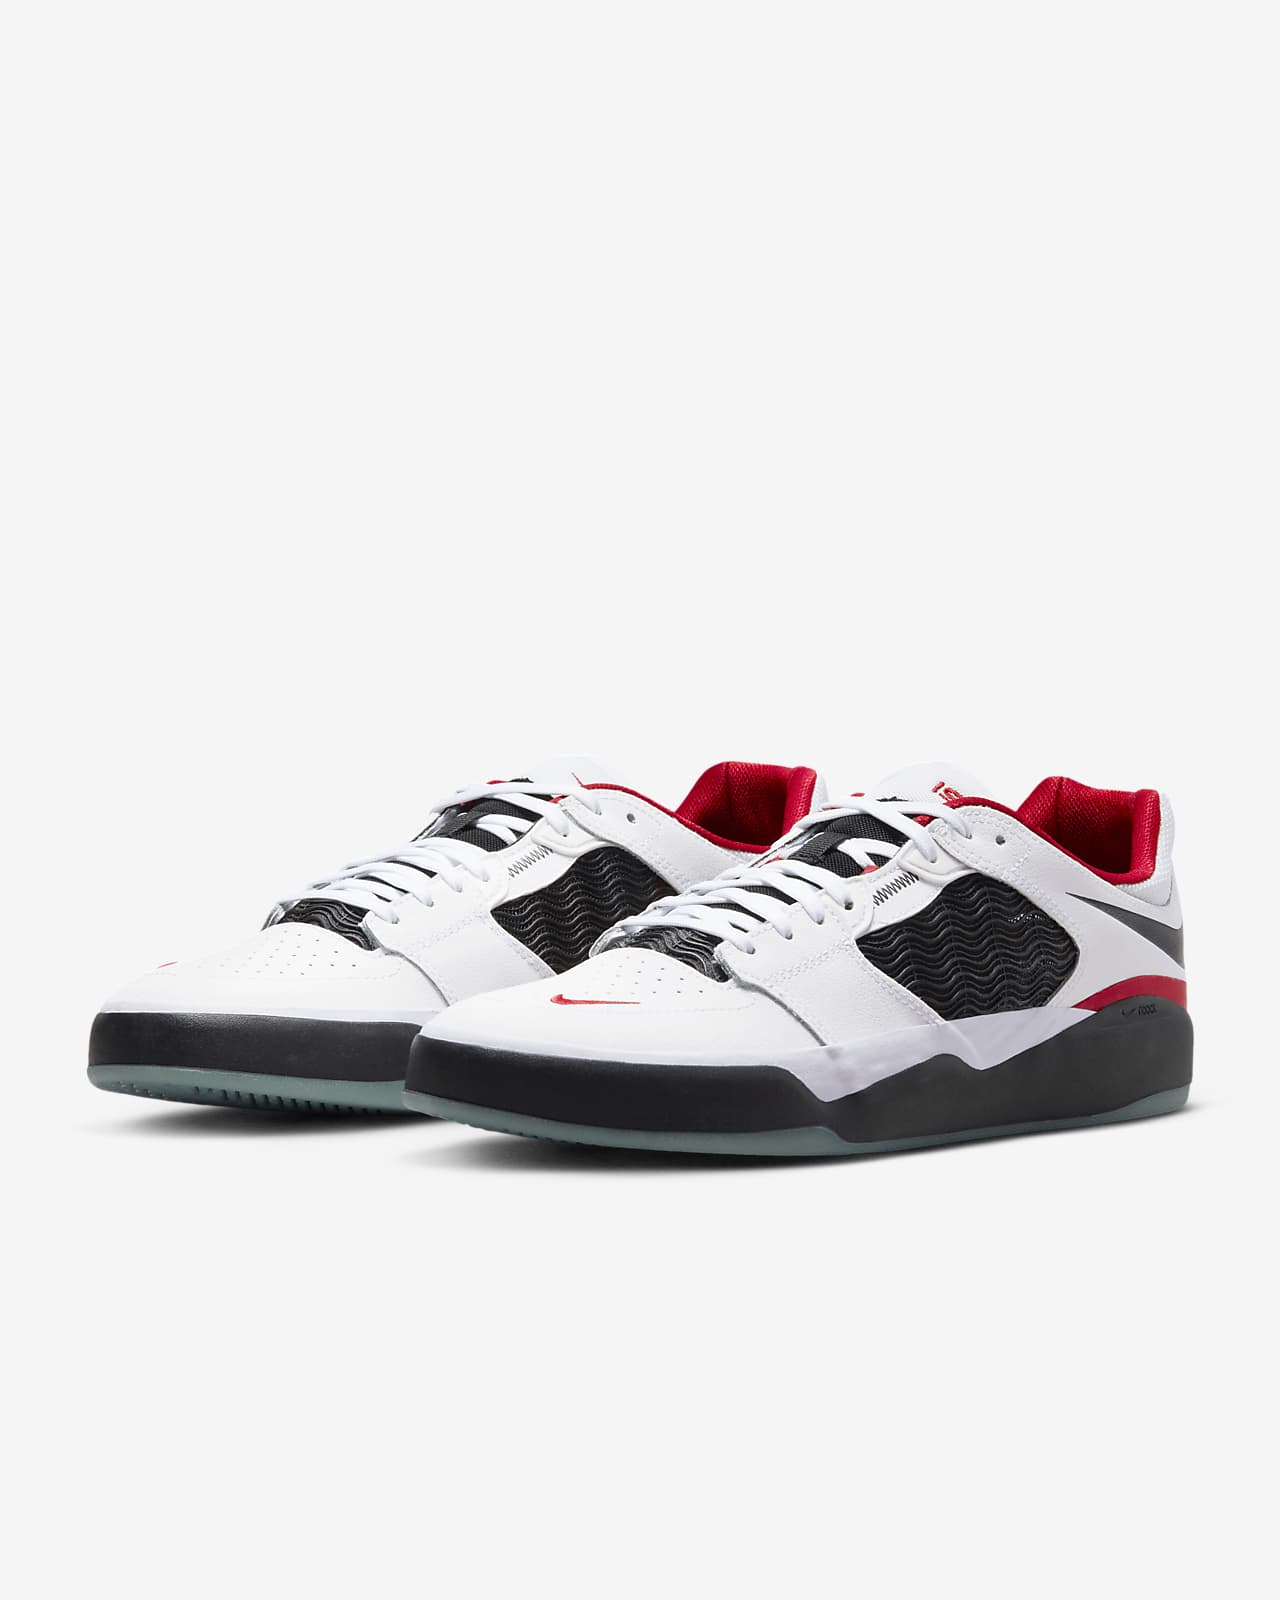 Nike SB Ishod Wair Premium Skate Shoes